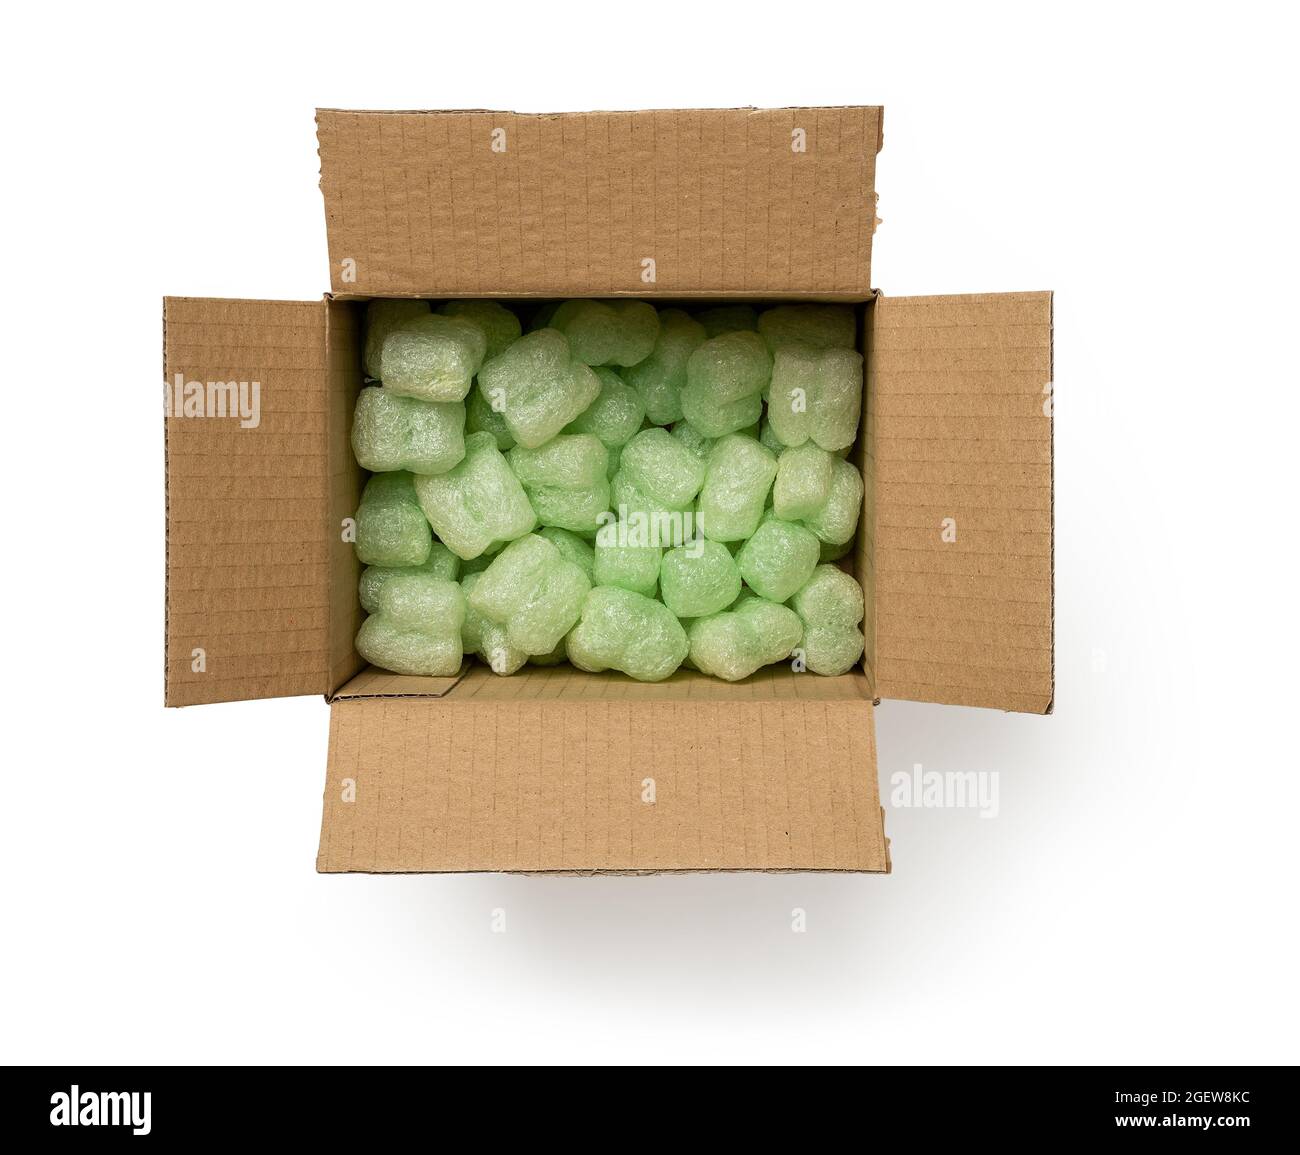 Verpackung Schaumstofffüller im Karton isoliert auf weißem Hintergrund.  Offene braune Box gefüllt mit grünen losen Füllern zum Schutz empfindlicher  Pakete Stockfotografie - Alamy